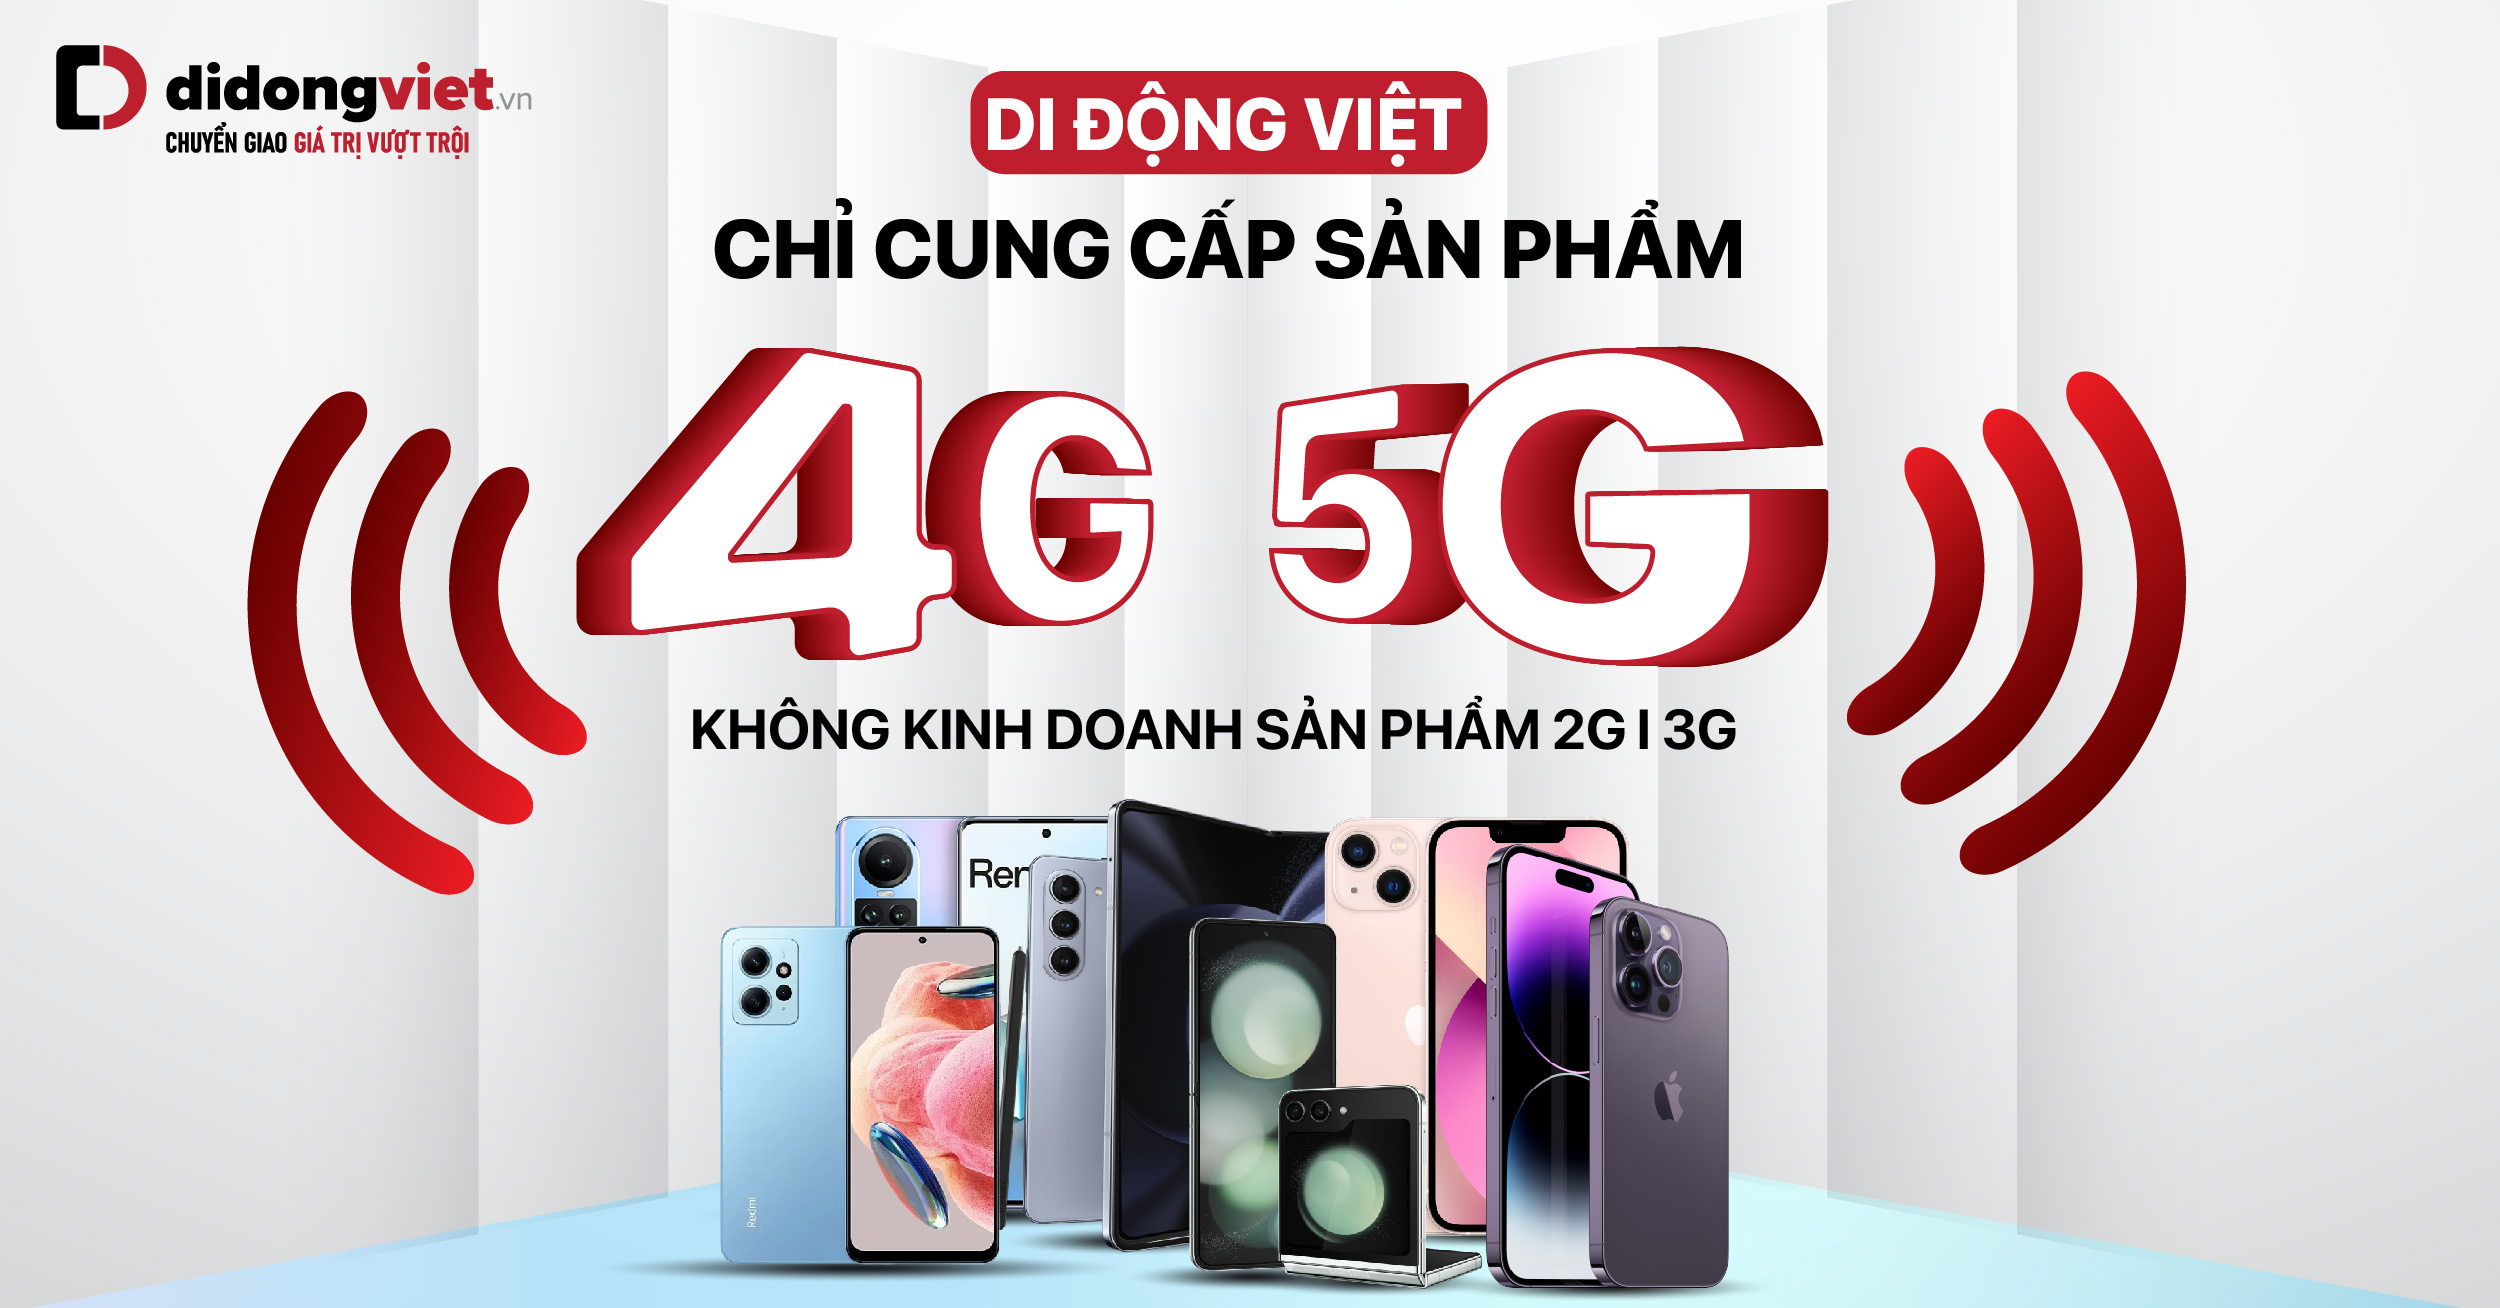 Di Động Việt kinh doanh điện thoại hỗ trợ 4G/5G, ngừng bán tất cả các thiết bị 2G/3G